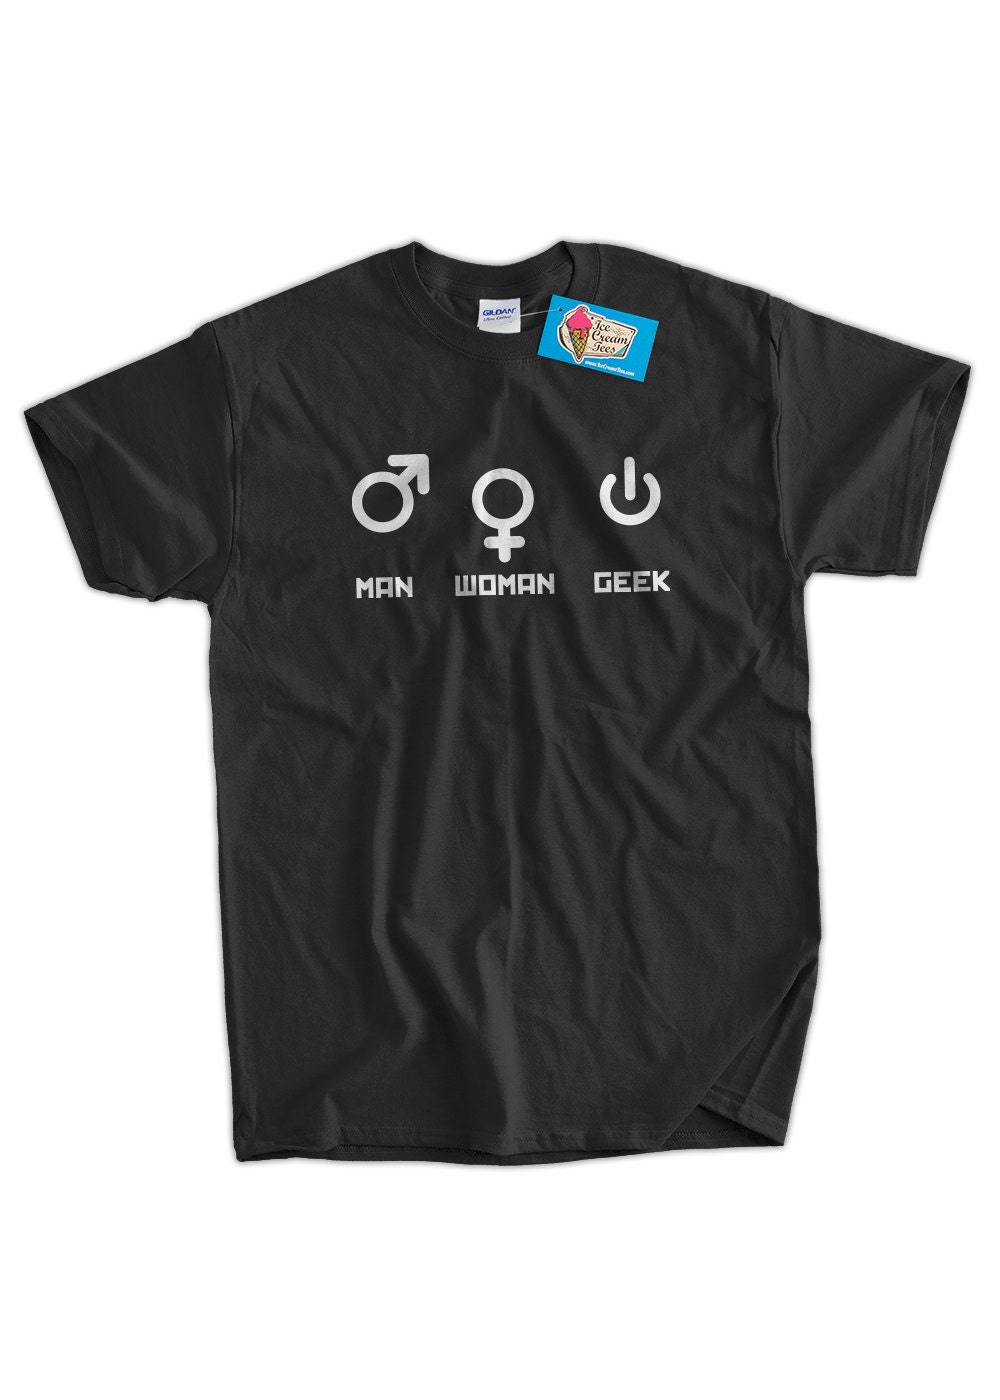 Geek T-shirt Nerd Man Woman Geek T-shirt Gifts - Etsy New Zealand